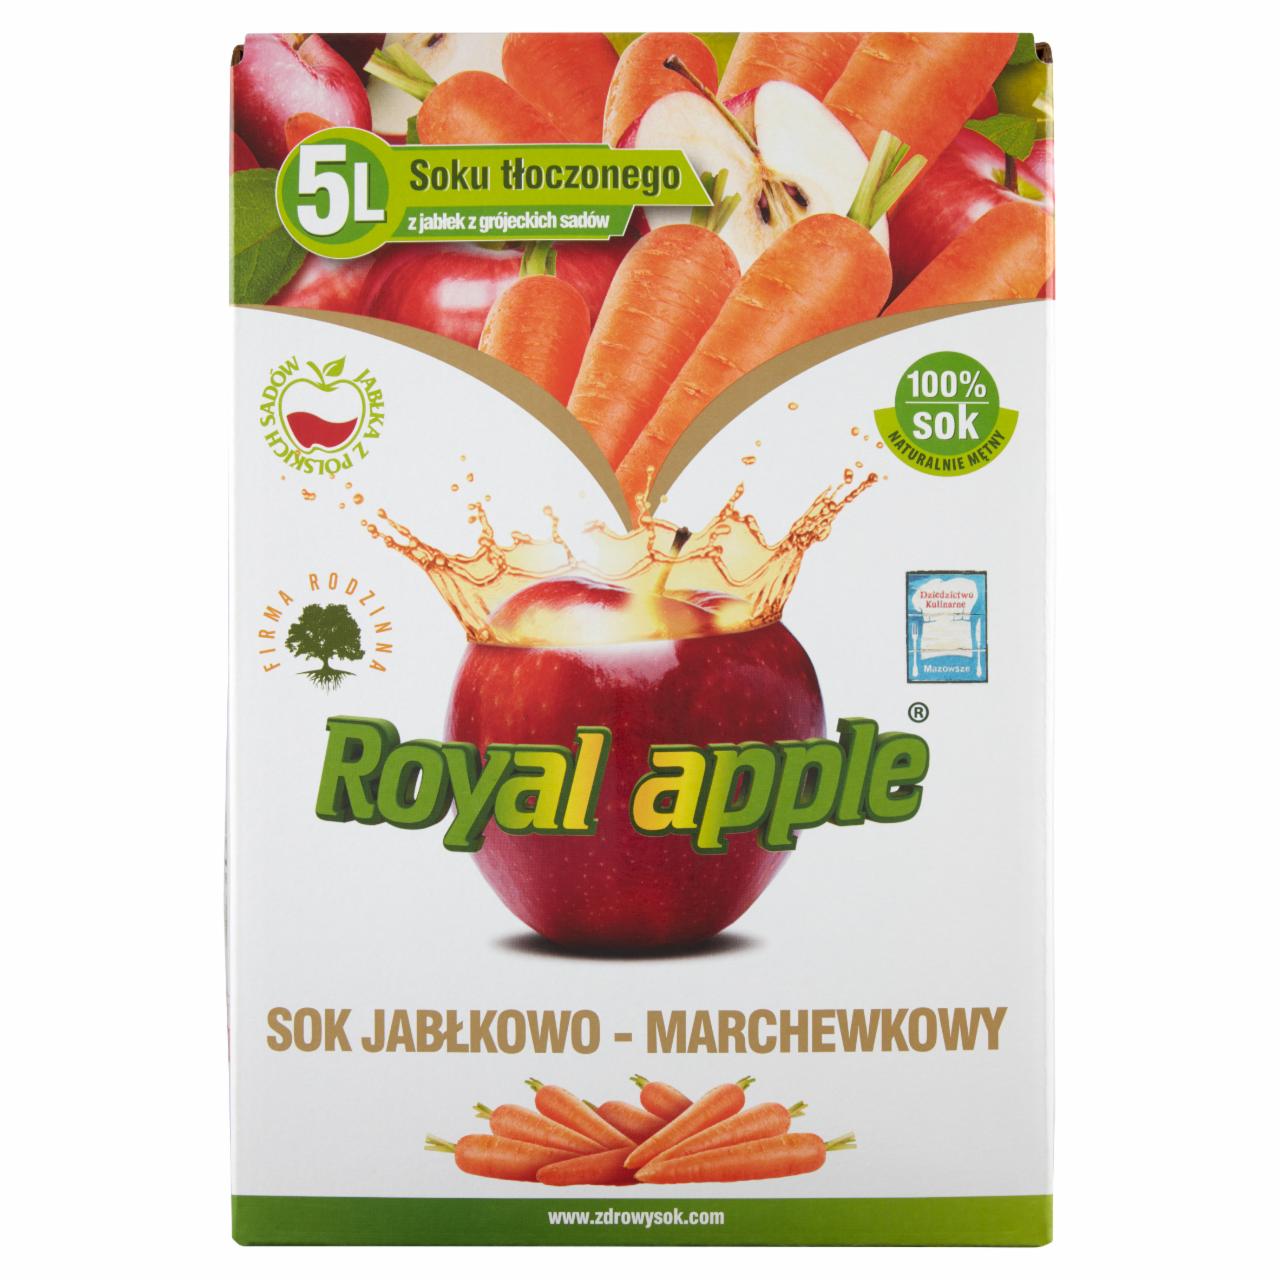 Zdjęcia - Royal apple Sok jabłkowo-marchewkowy 5 l